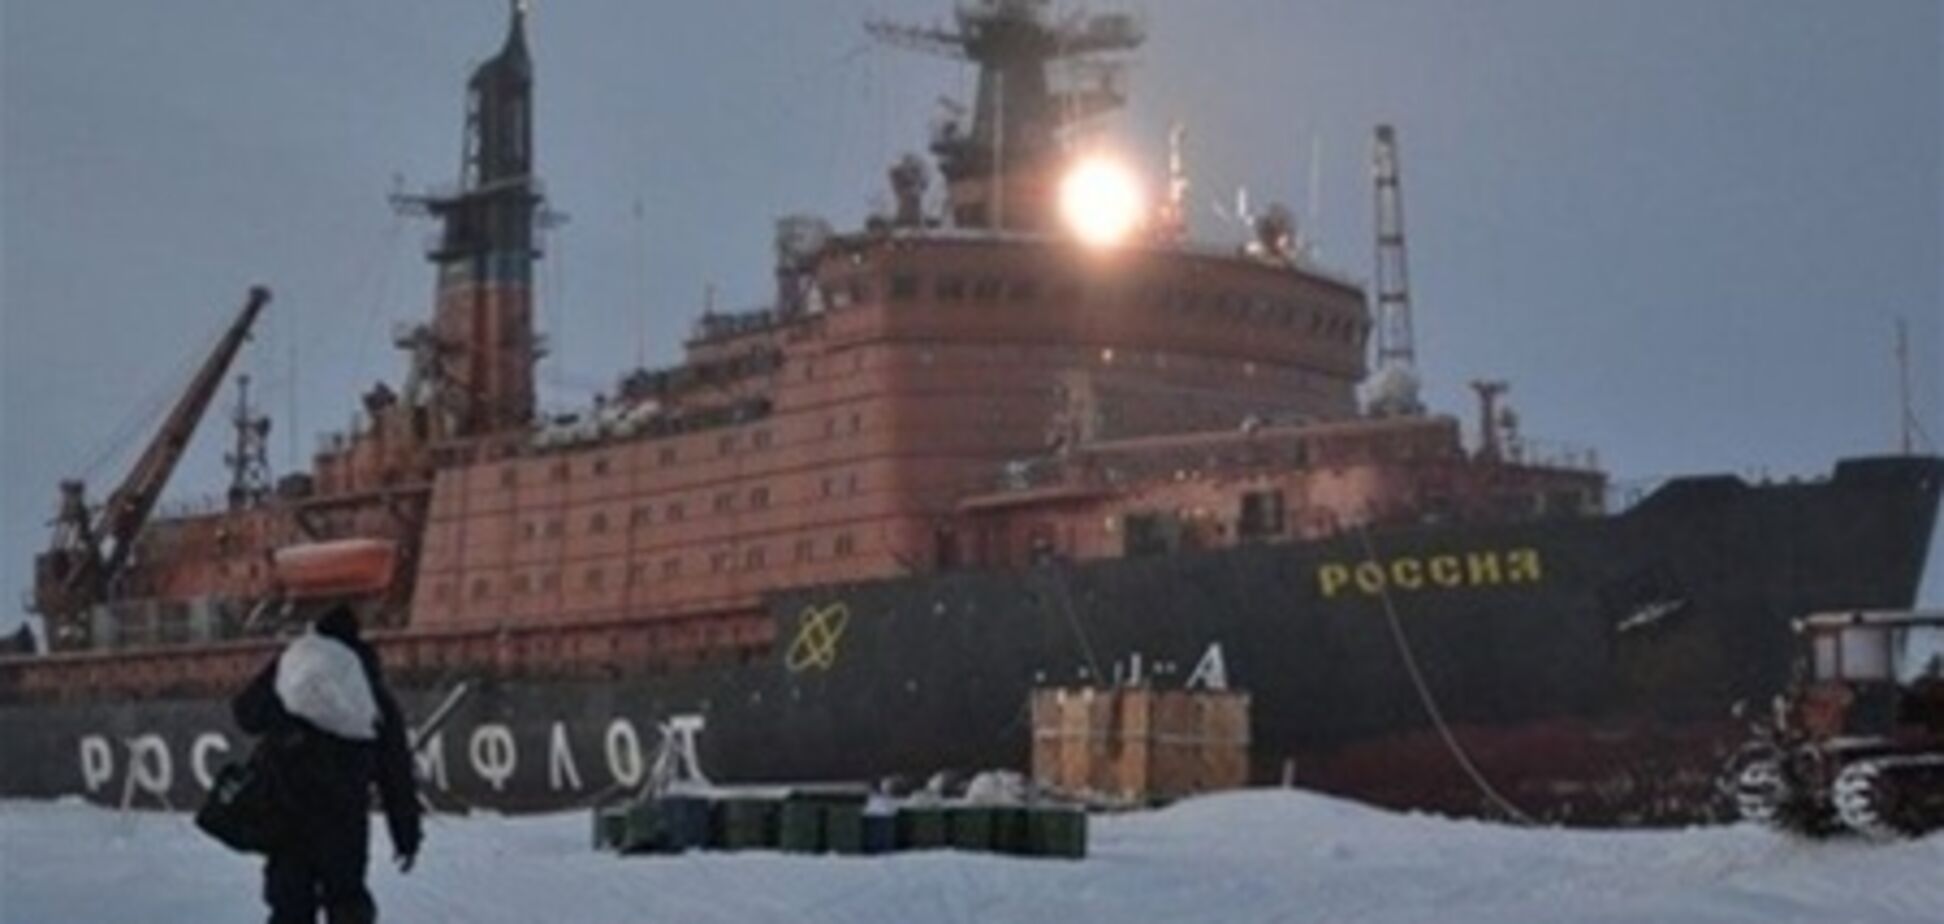 Россия срочно эвакуирует научную станцию из Арктики